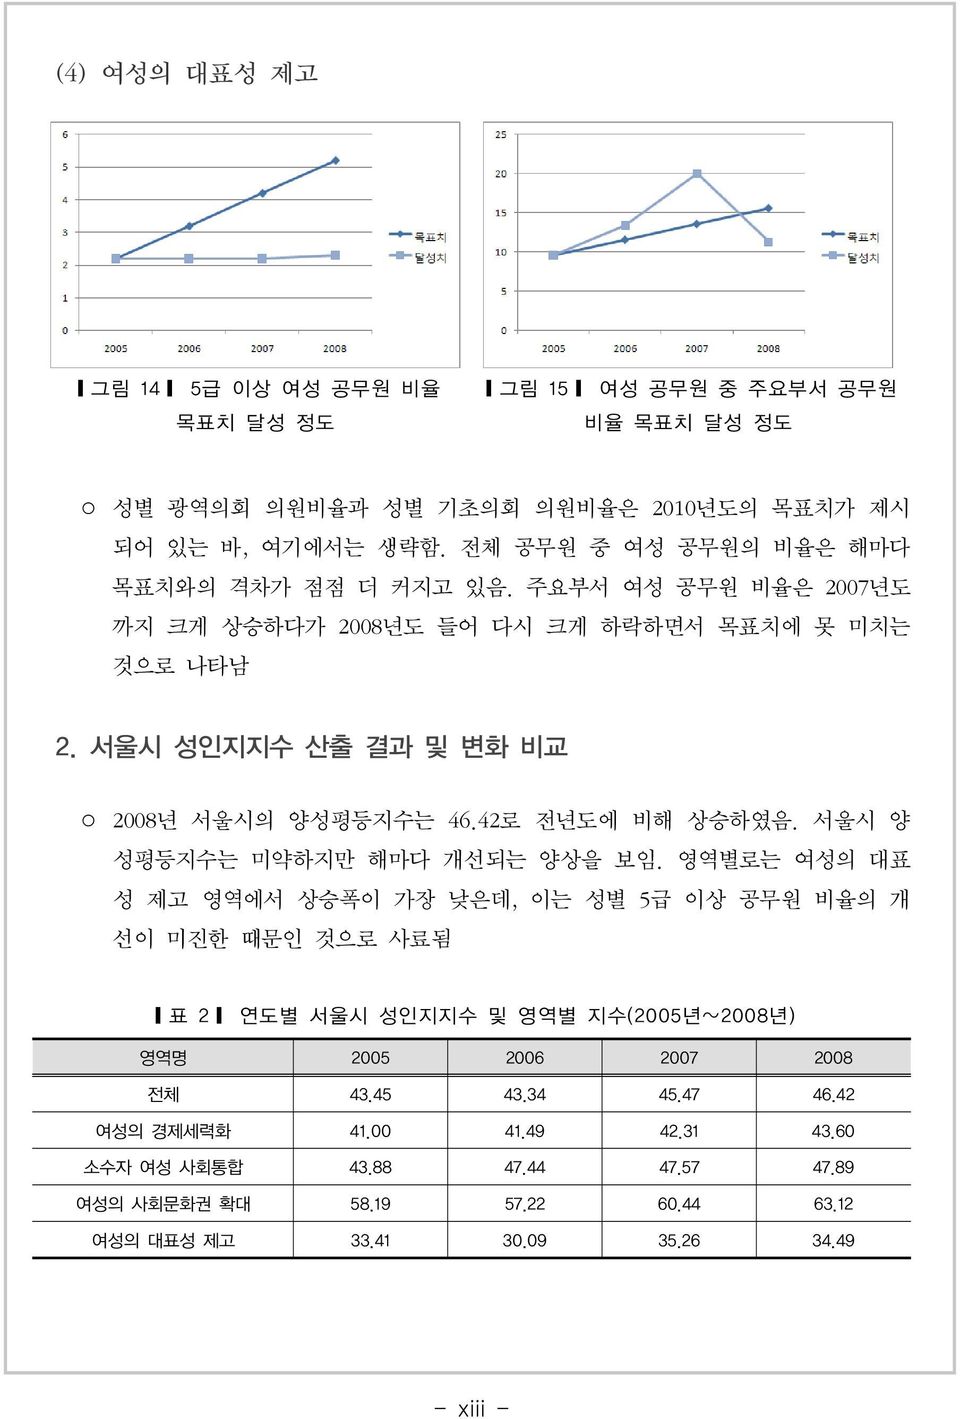 42로 전년도에 비해 상승하였음. 서울시 양 성평등지수는 미약하지만 해마다 개선되는 양상을 보임.